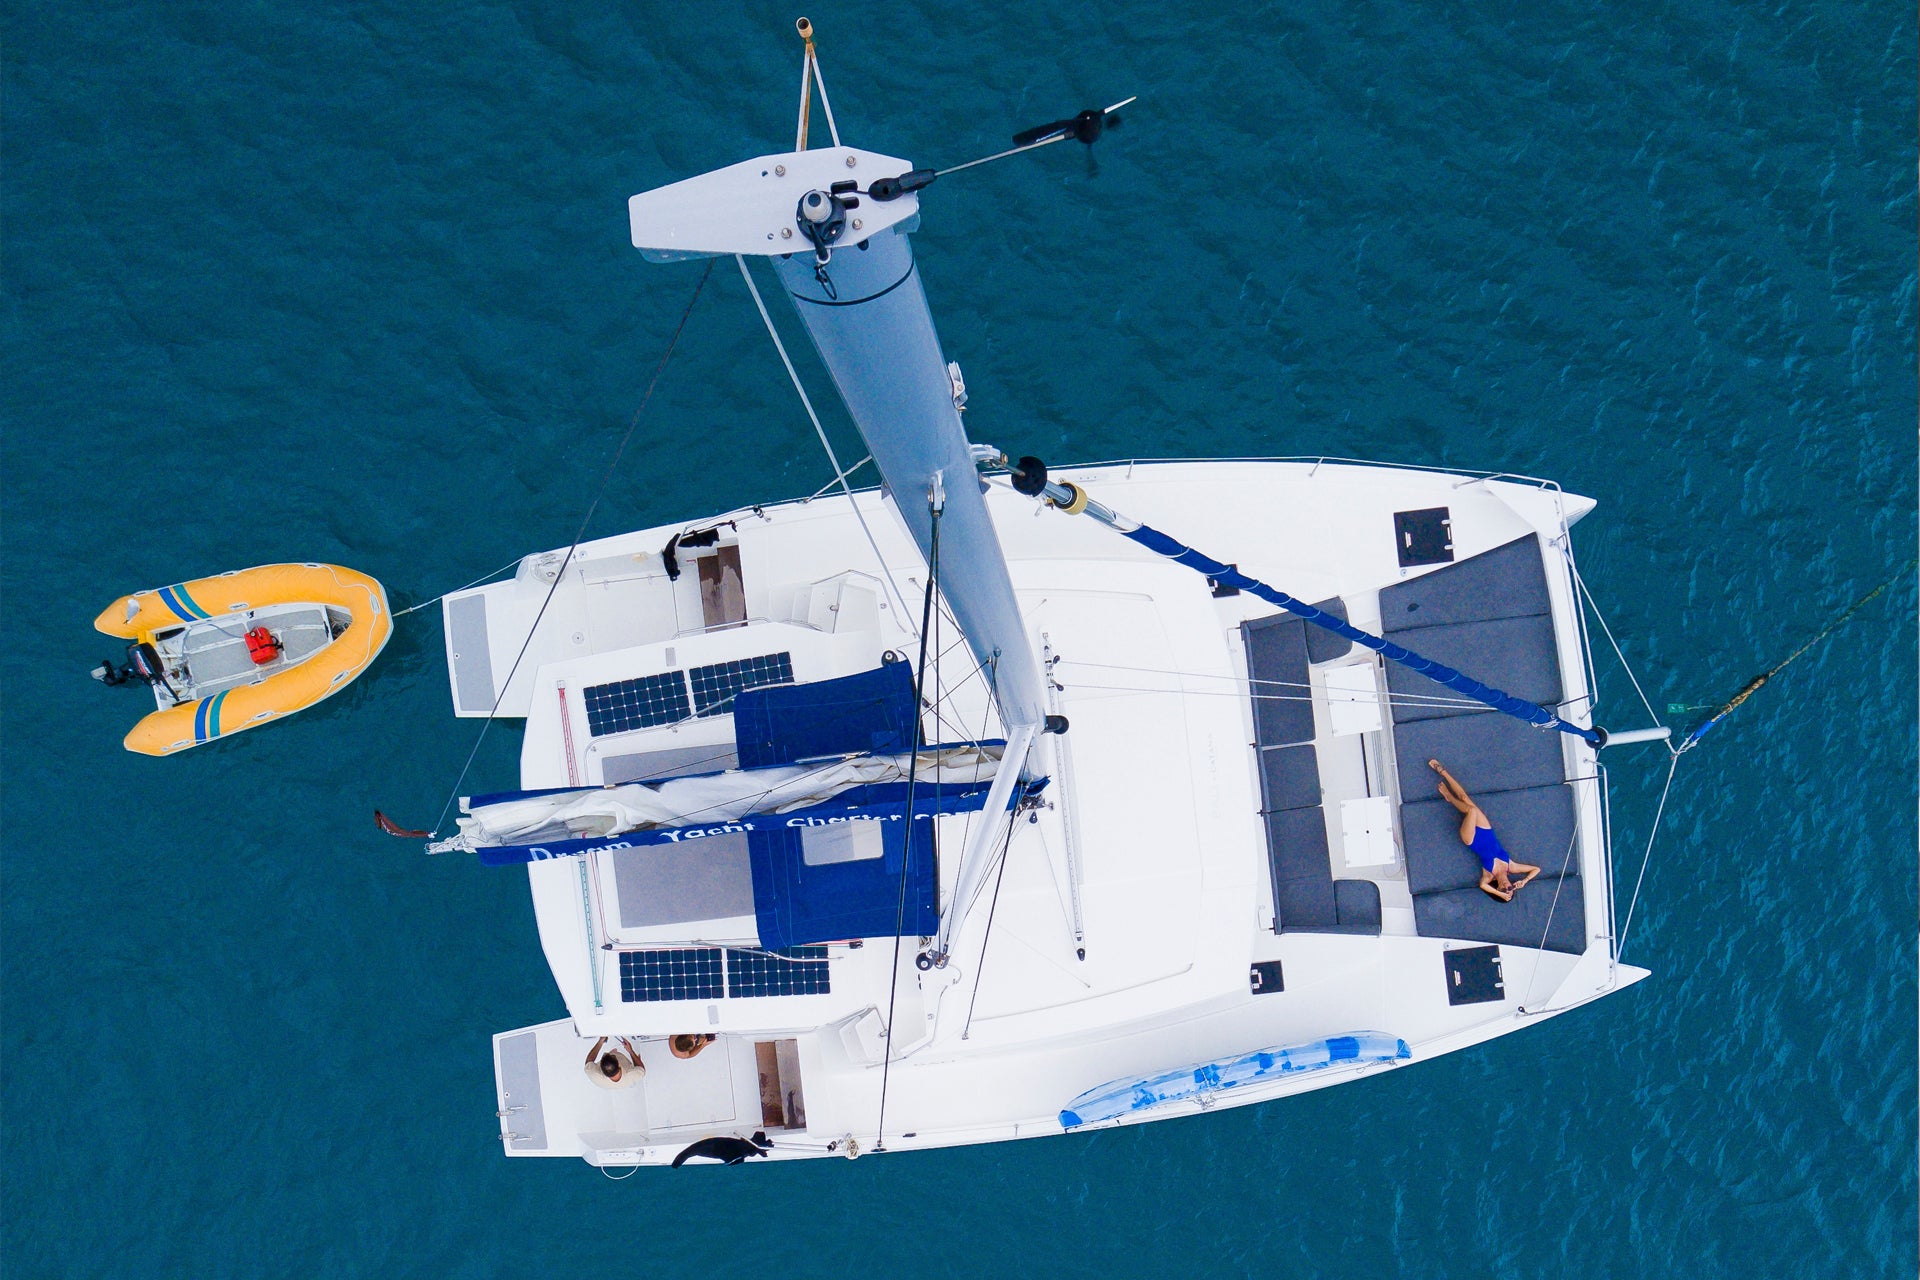 Amerika katamaran charter segling i blått hav